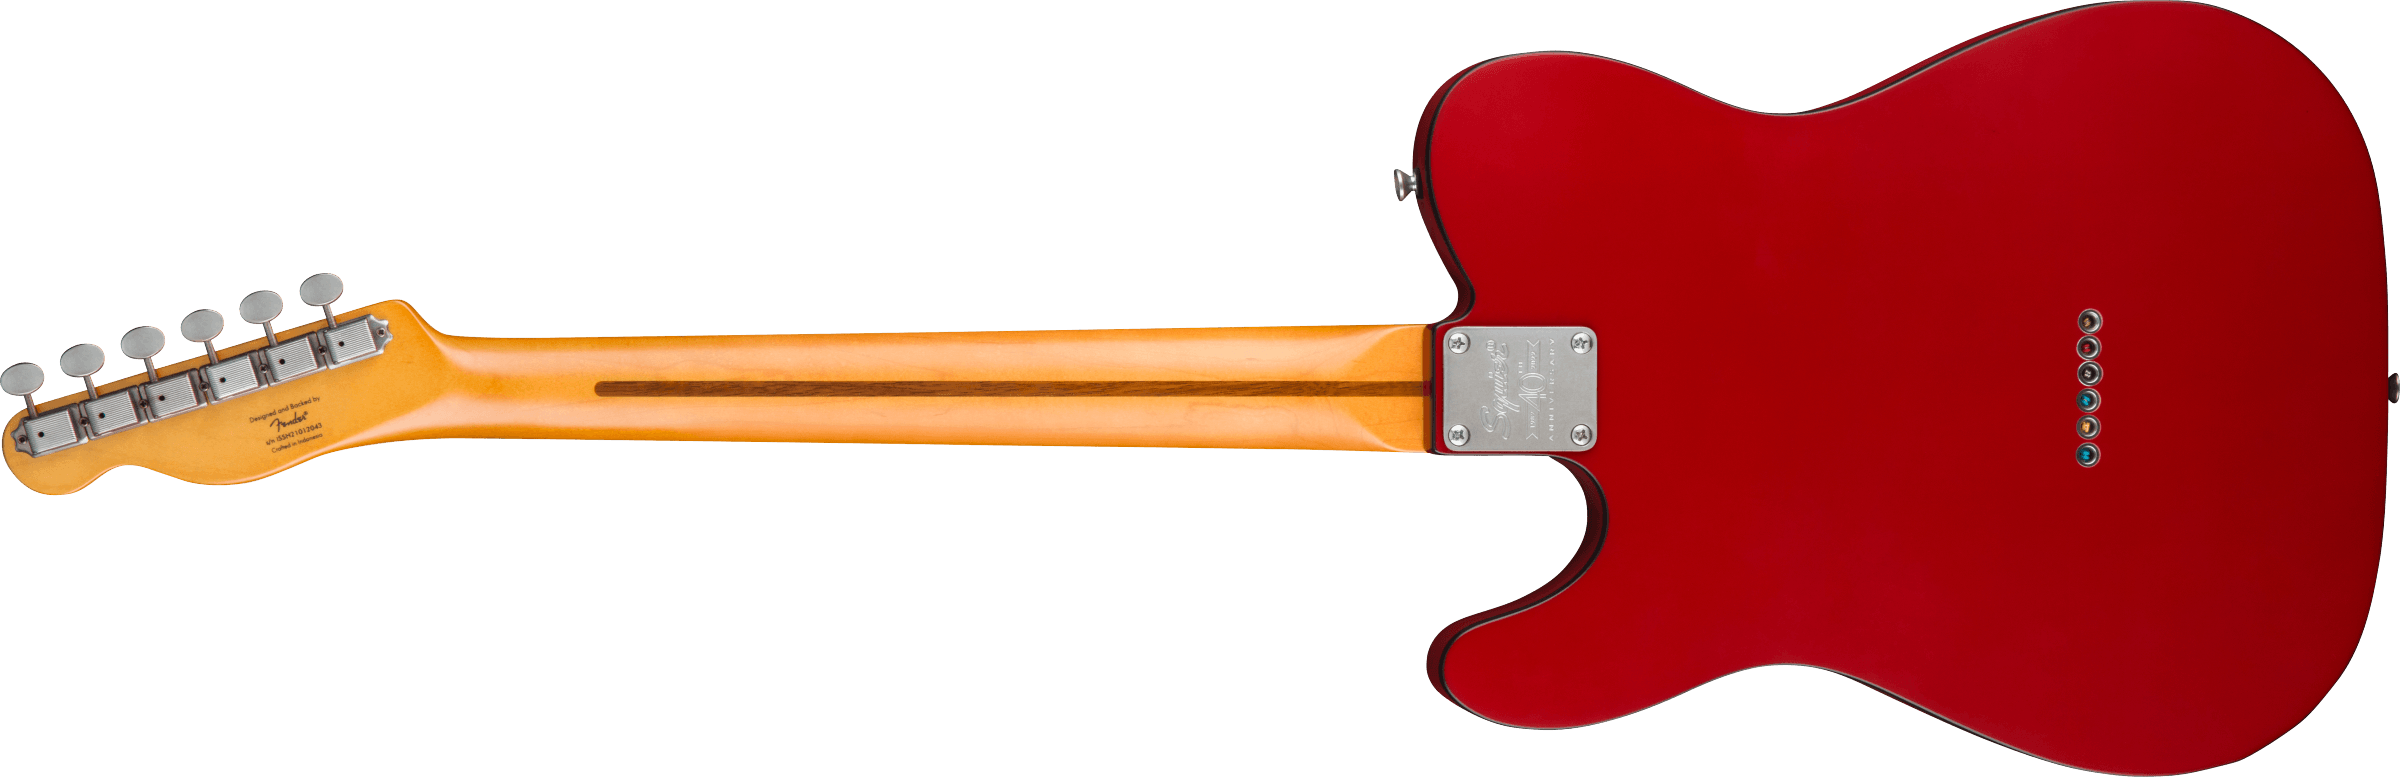 Squier Tele 40th Anniversary Vintage Edition Mn - Satin Dakota Red - Televorm elektrische gitaar - Variation 1